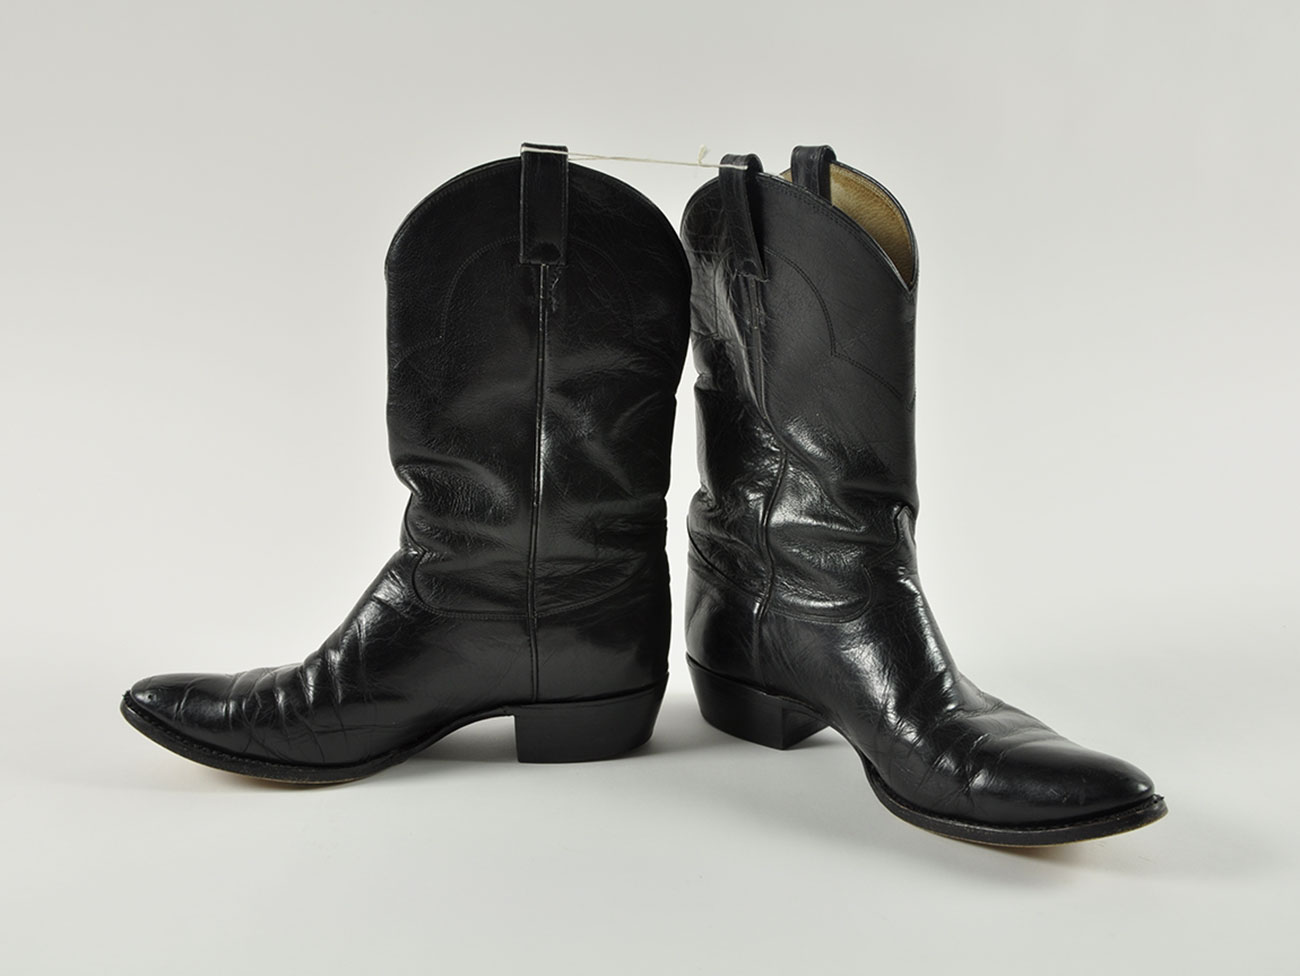 Paire de boots Justin Boots Texas, Etats Unis Vers 1990 Cuir 33,3 cm de hauteur, 10,2 cm de largeur, 30,1 cm de longueur, Don d’Eddy Mitchell © Collection Mucem